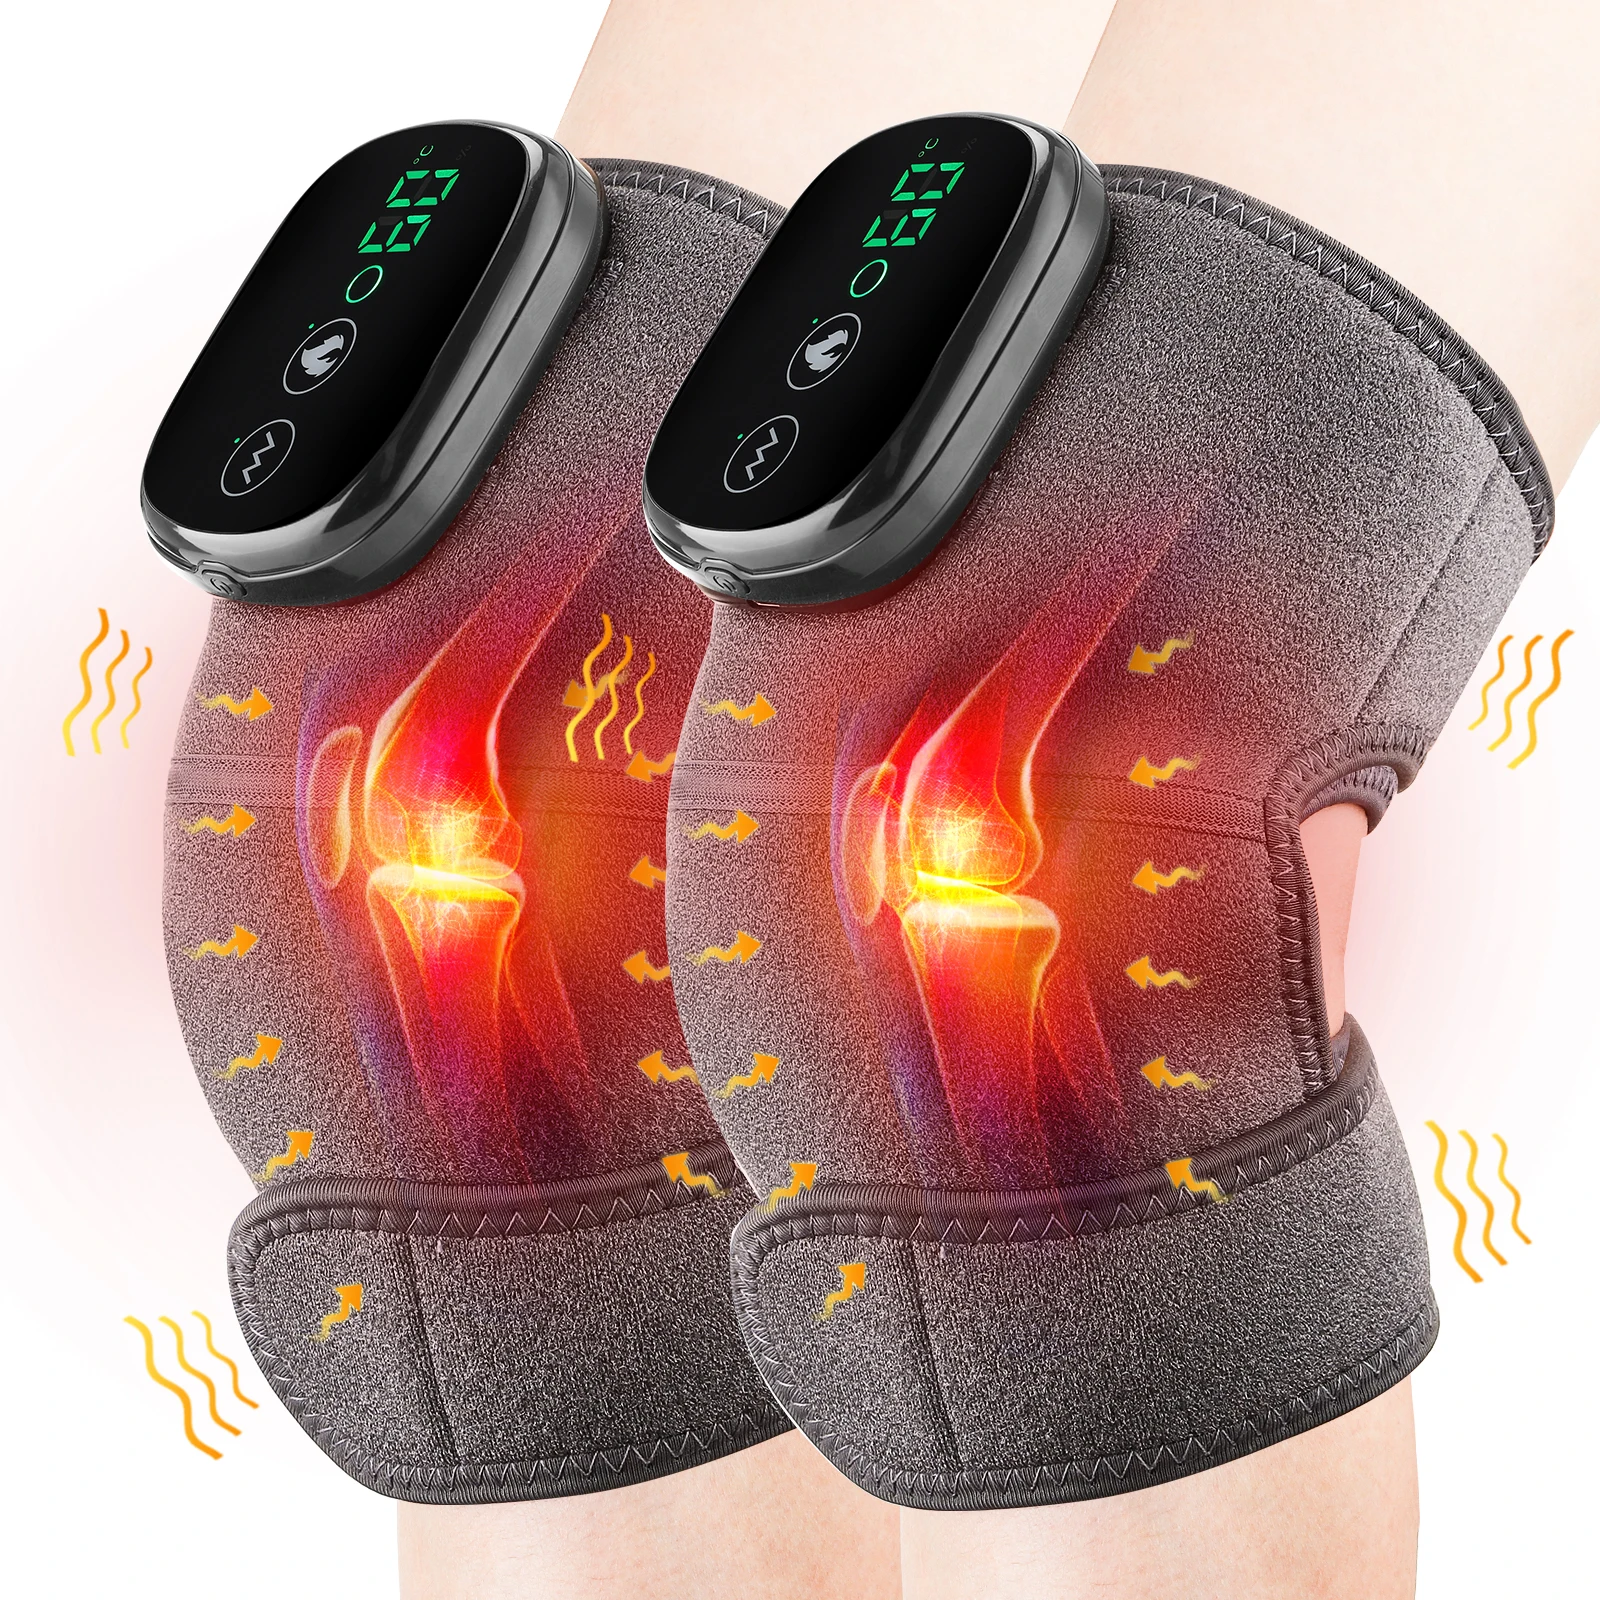 

Электрический массажер для колена с подогревом, Вибрационный массажер для суставов колена, локтей, плеч, теплый бандаж для снятия боли при артрите